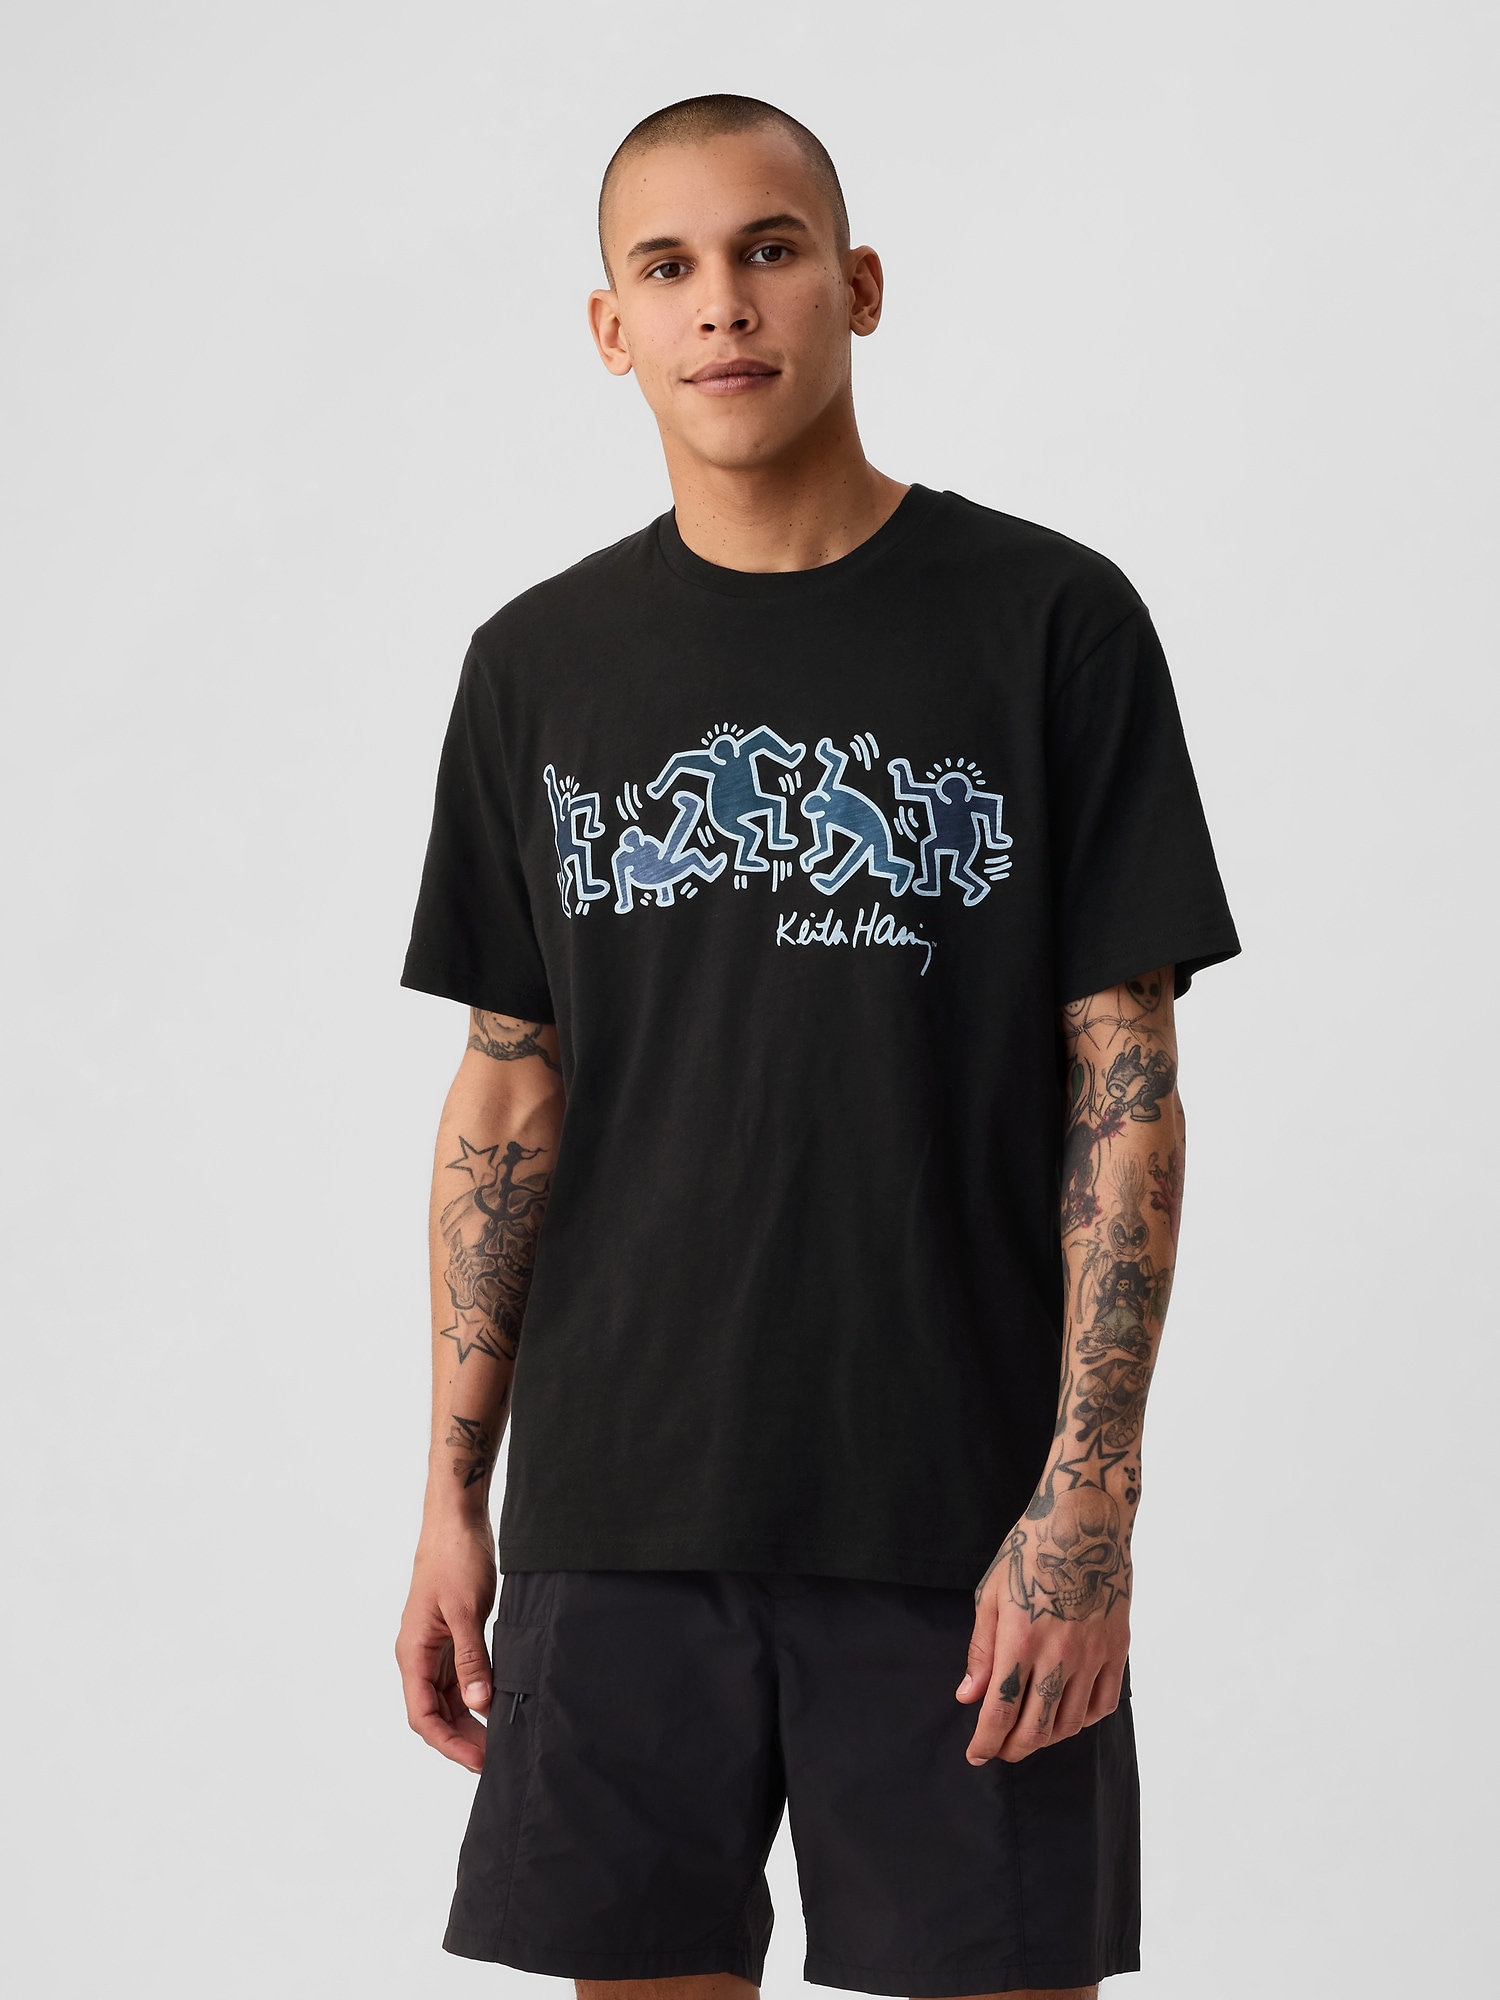 Gap × Keith Haring Graphic T-Shirt